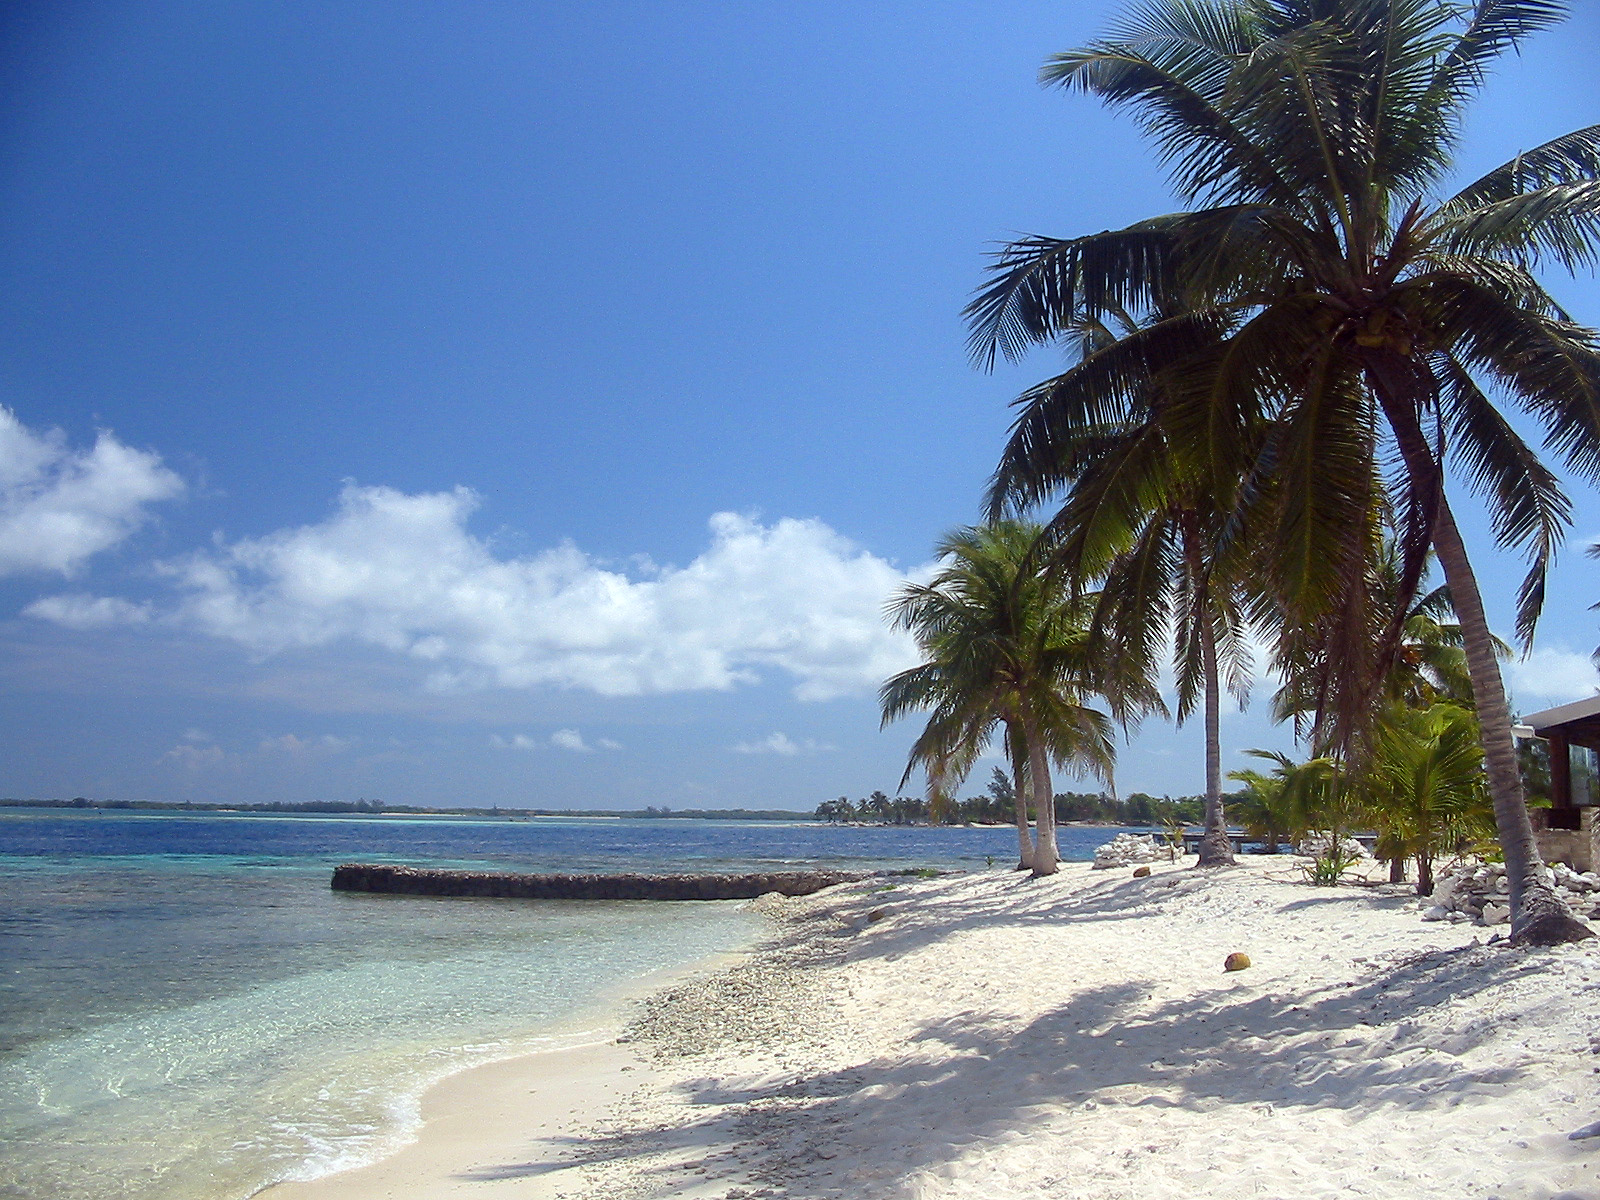 fantastici sfondi da spiaggia,albero,spiaggia,palma,cielo,caraibico